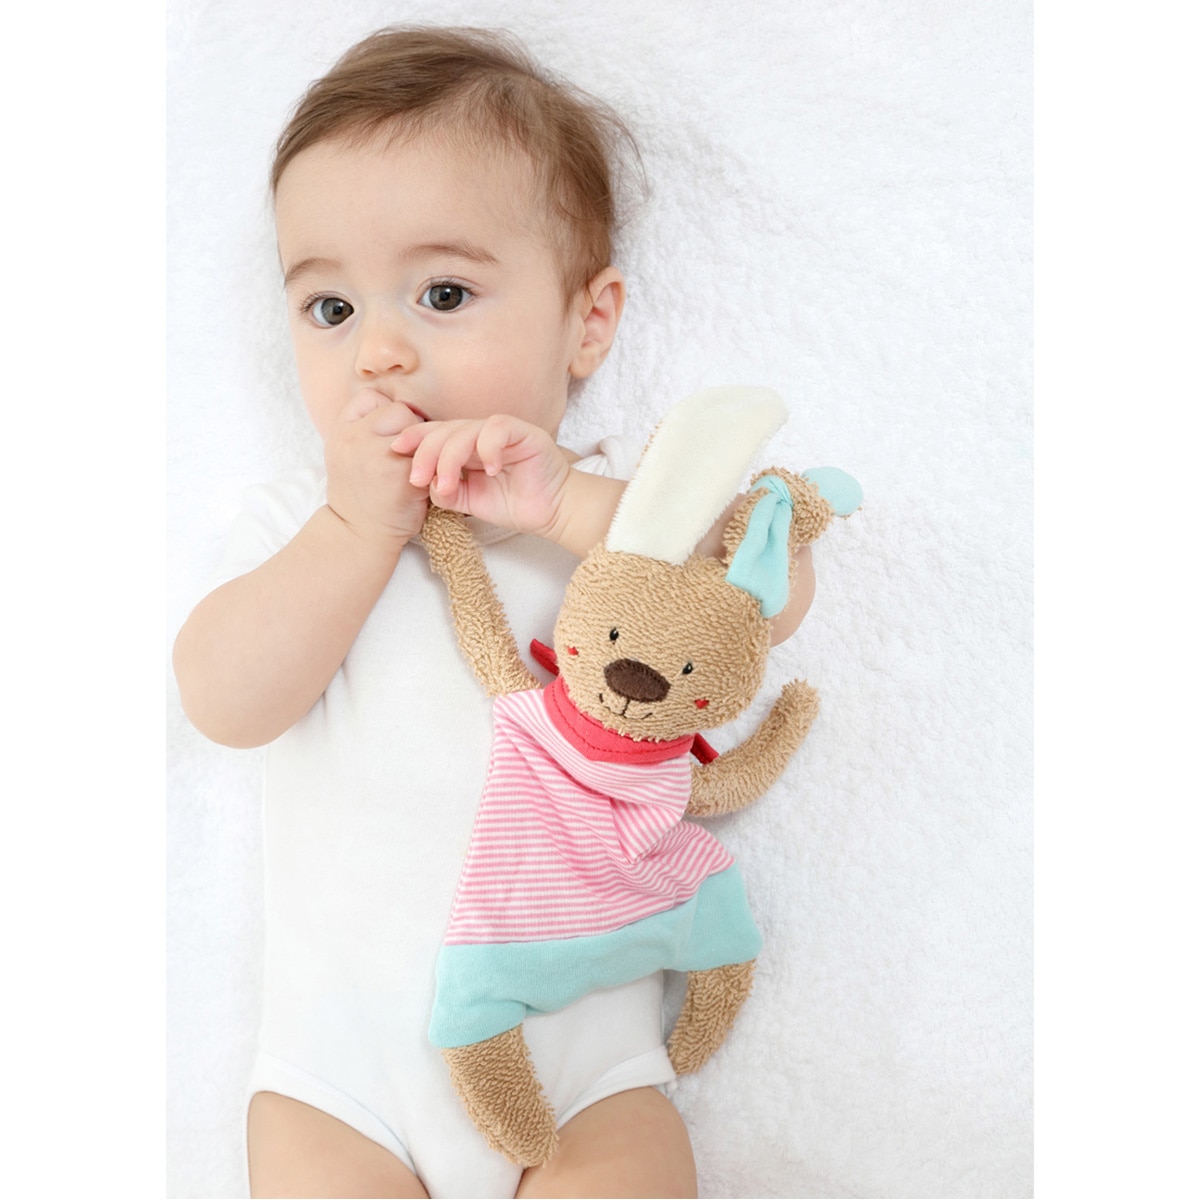 【新商品】赤ちゃんのための布製遊具のご紹介